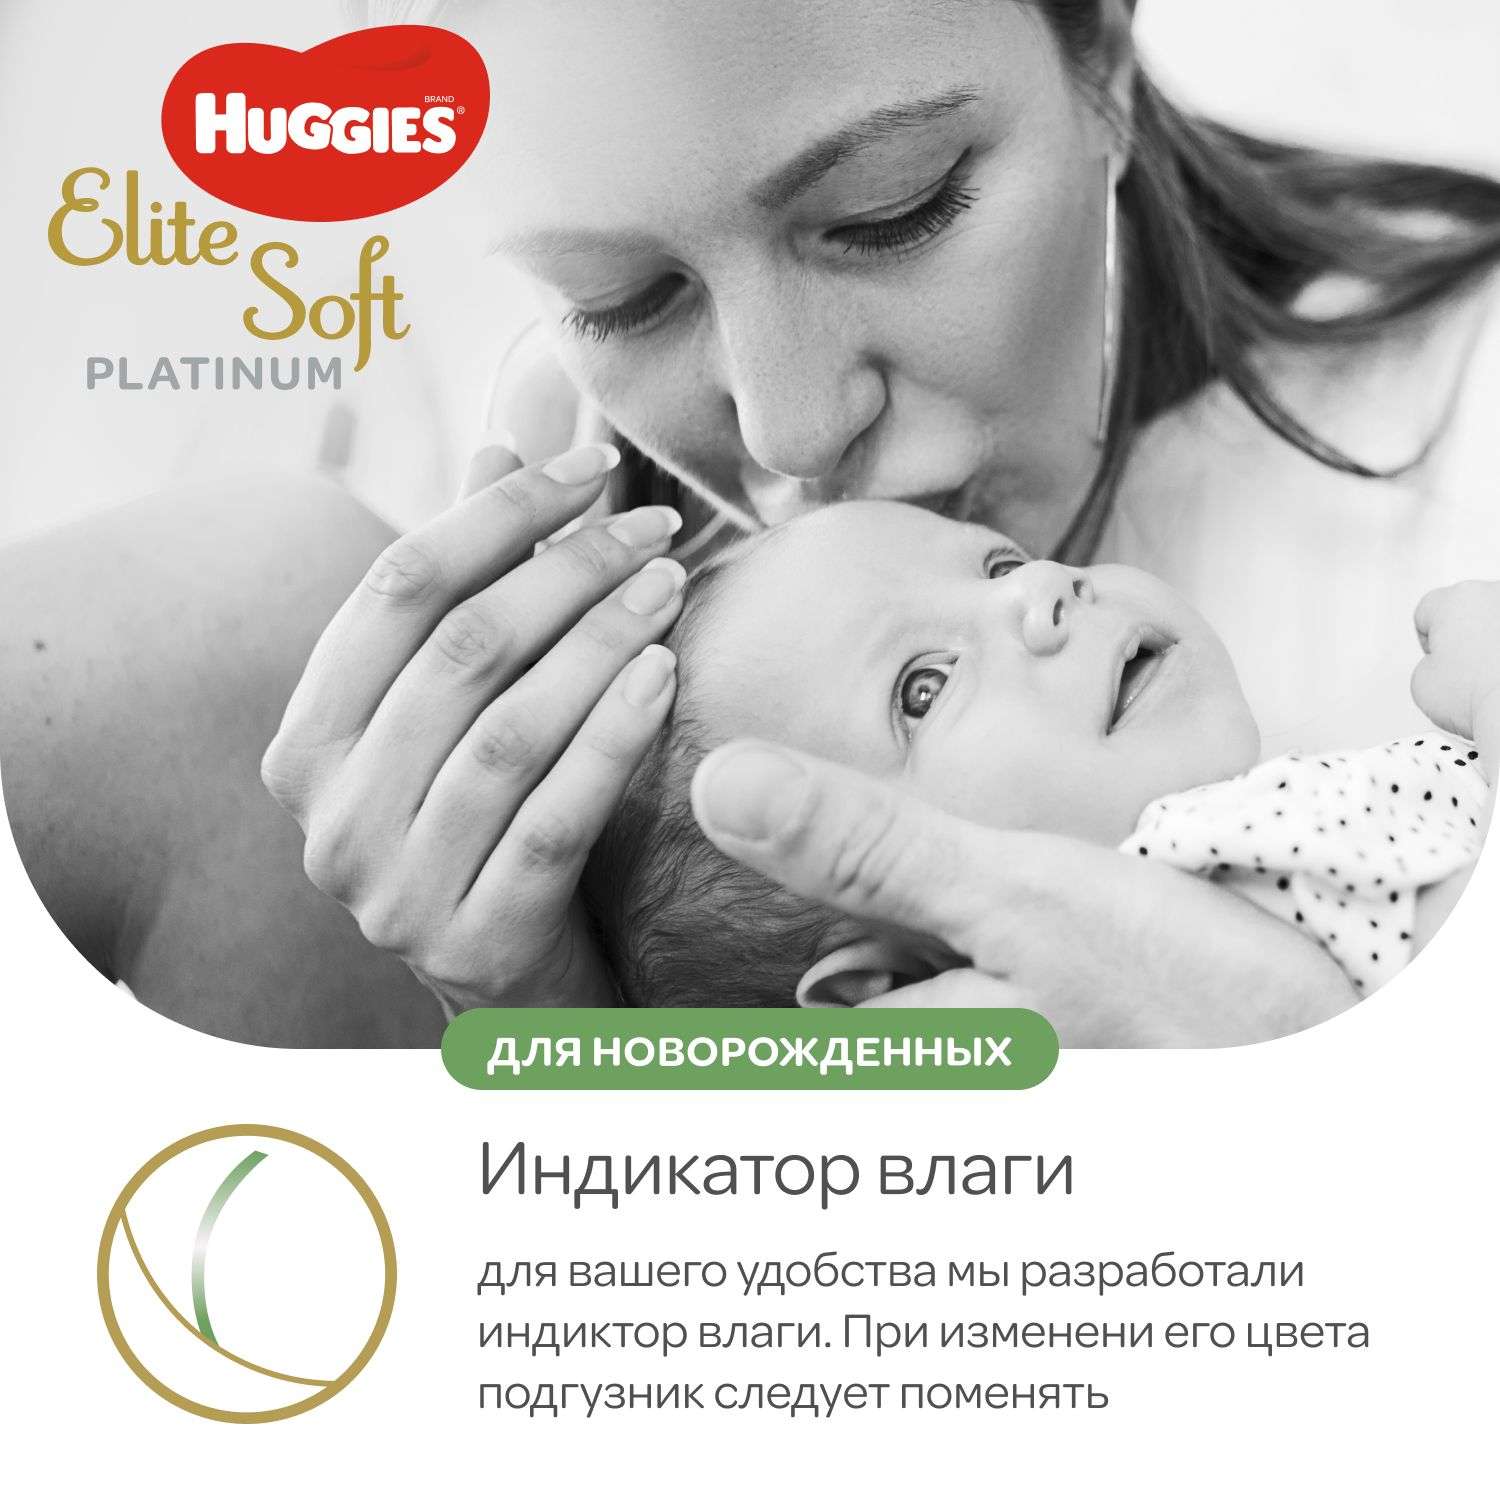 Подгузники Huggies Elite Soft Platinum для новорожденных 1 до 5кг 90шт - фото 9